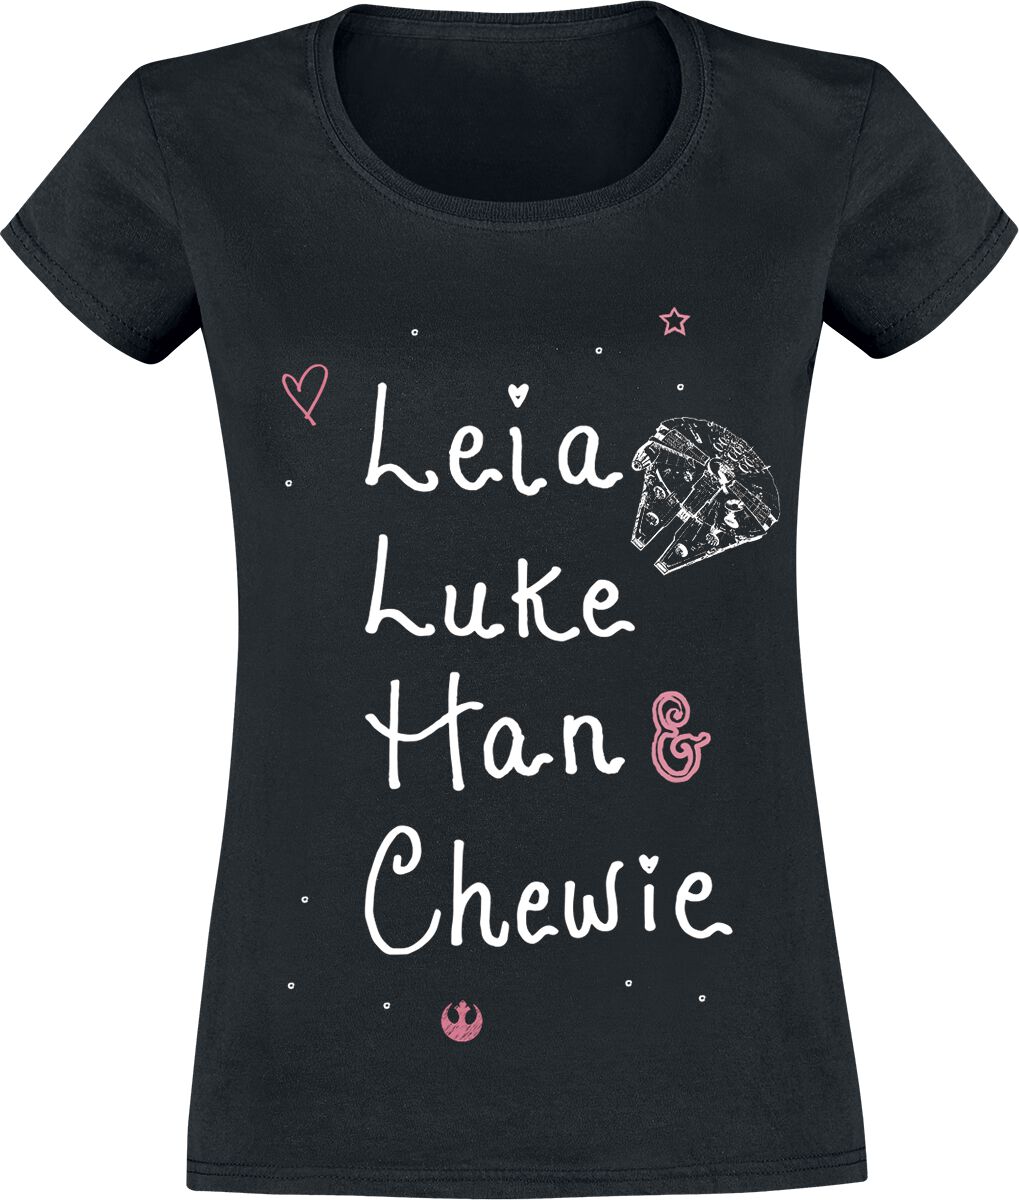 T-Shirt Manches courtes de Star Wars - Heroes - S à XL - pour Femme - noir